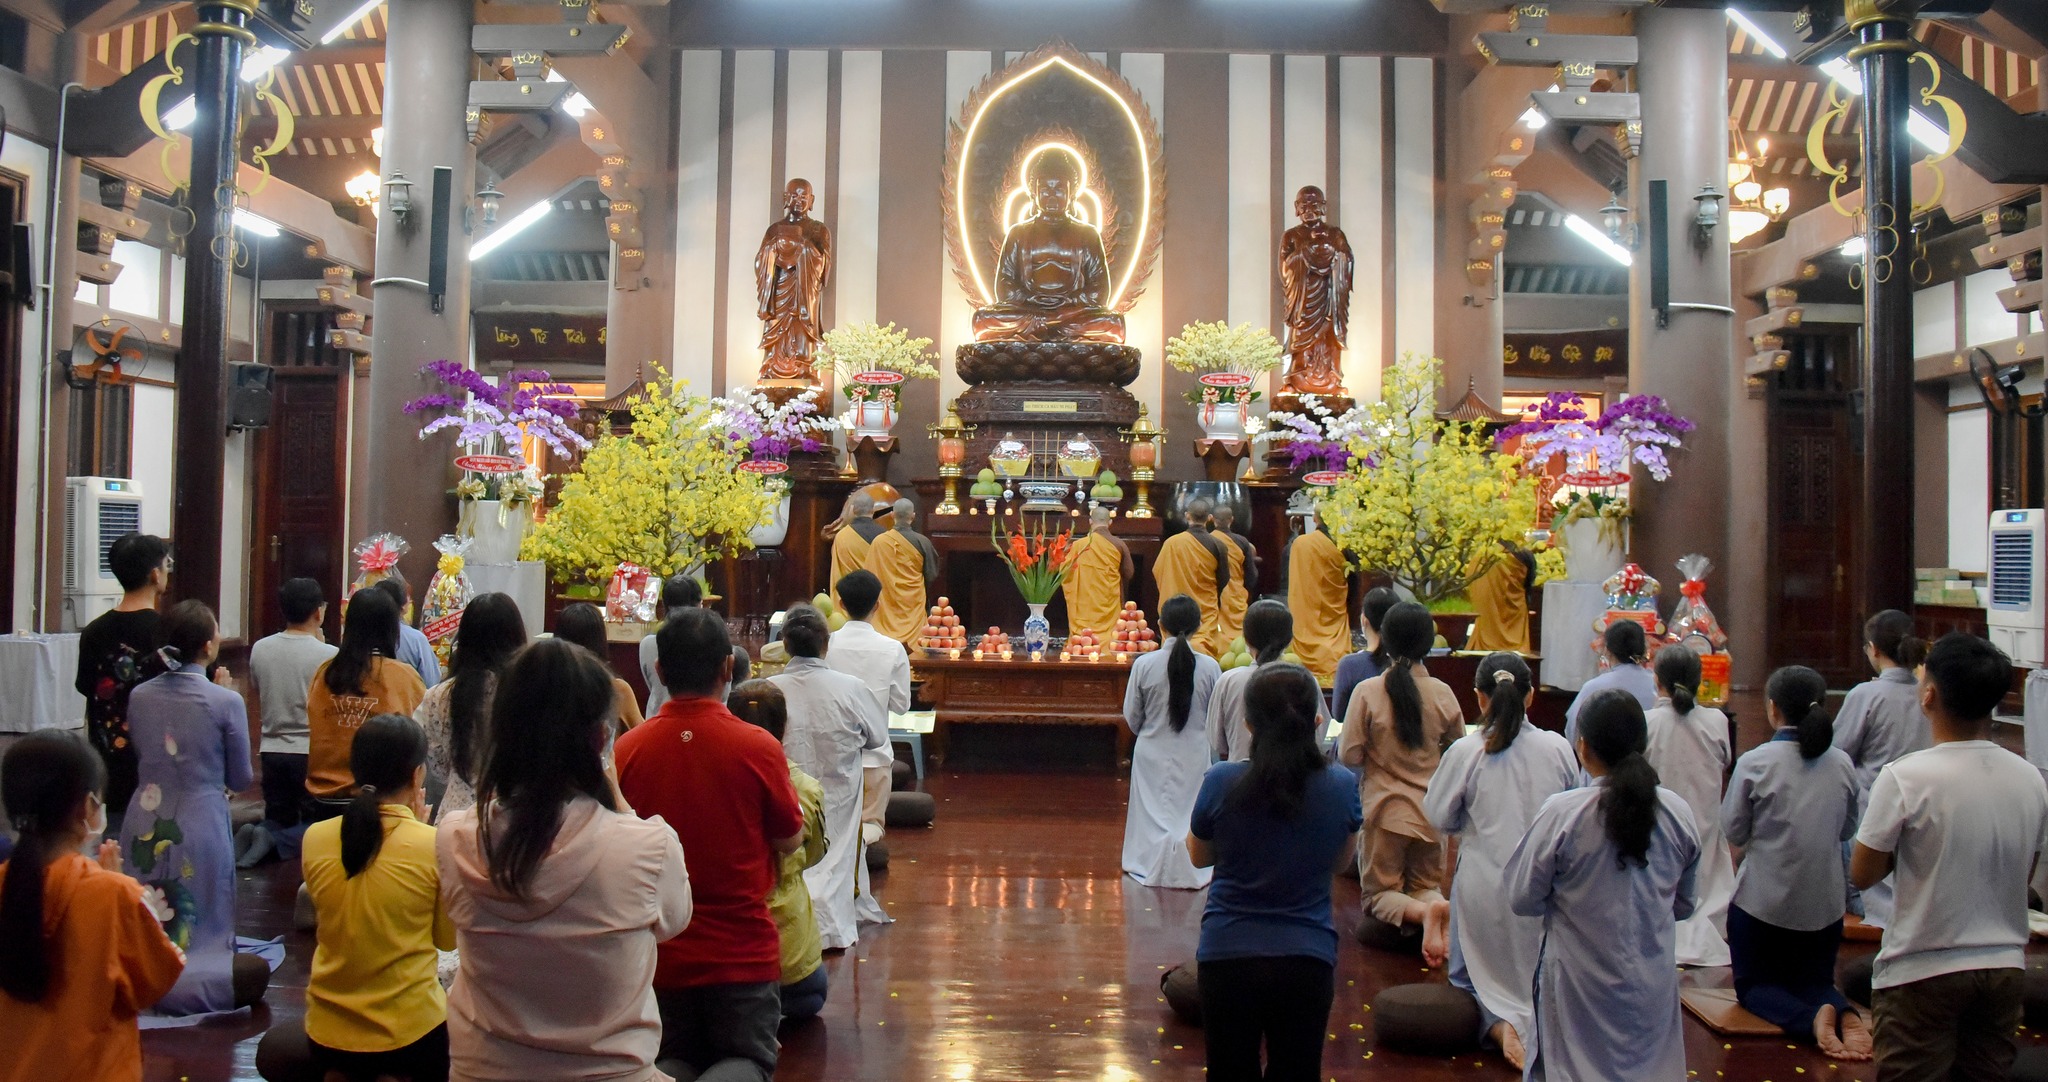 [Hình ảnh] Khóa lễ Cầu An đầu năm - tối mùng 8 tháng Giêng năm Qúy Mão tại Tu viện Khánh An